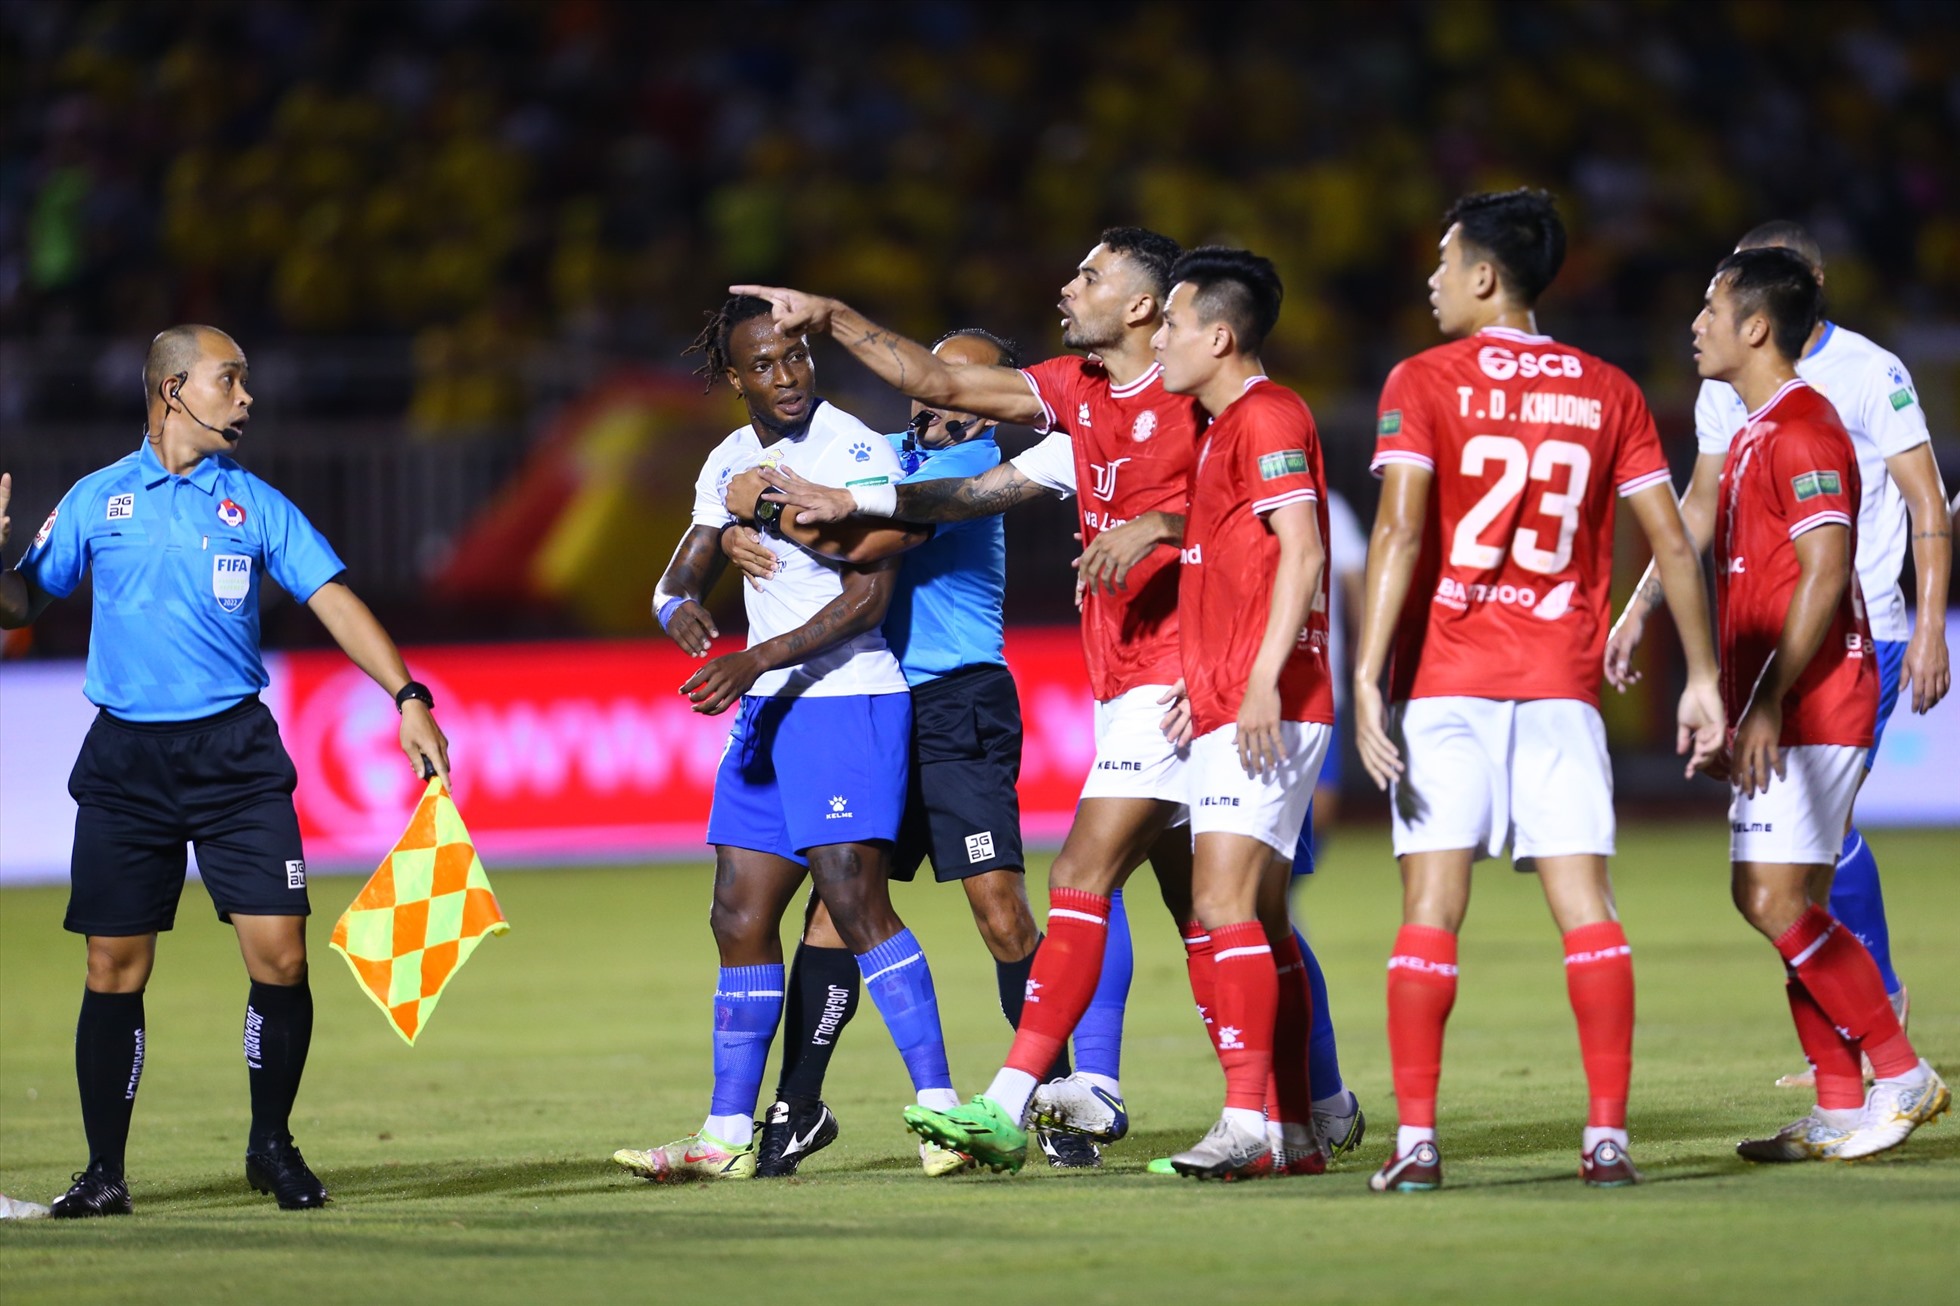 Đồng đội của Mansaray là Trần Trung Hiếu cũng lao vào “thua đủ” với các cầu thủ TPHCM. Trọng tài chính Vũ Nguyên Vũ phải ra sức can ngăn thì trận đấu mới có thể tiếp tục.